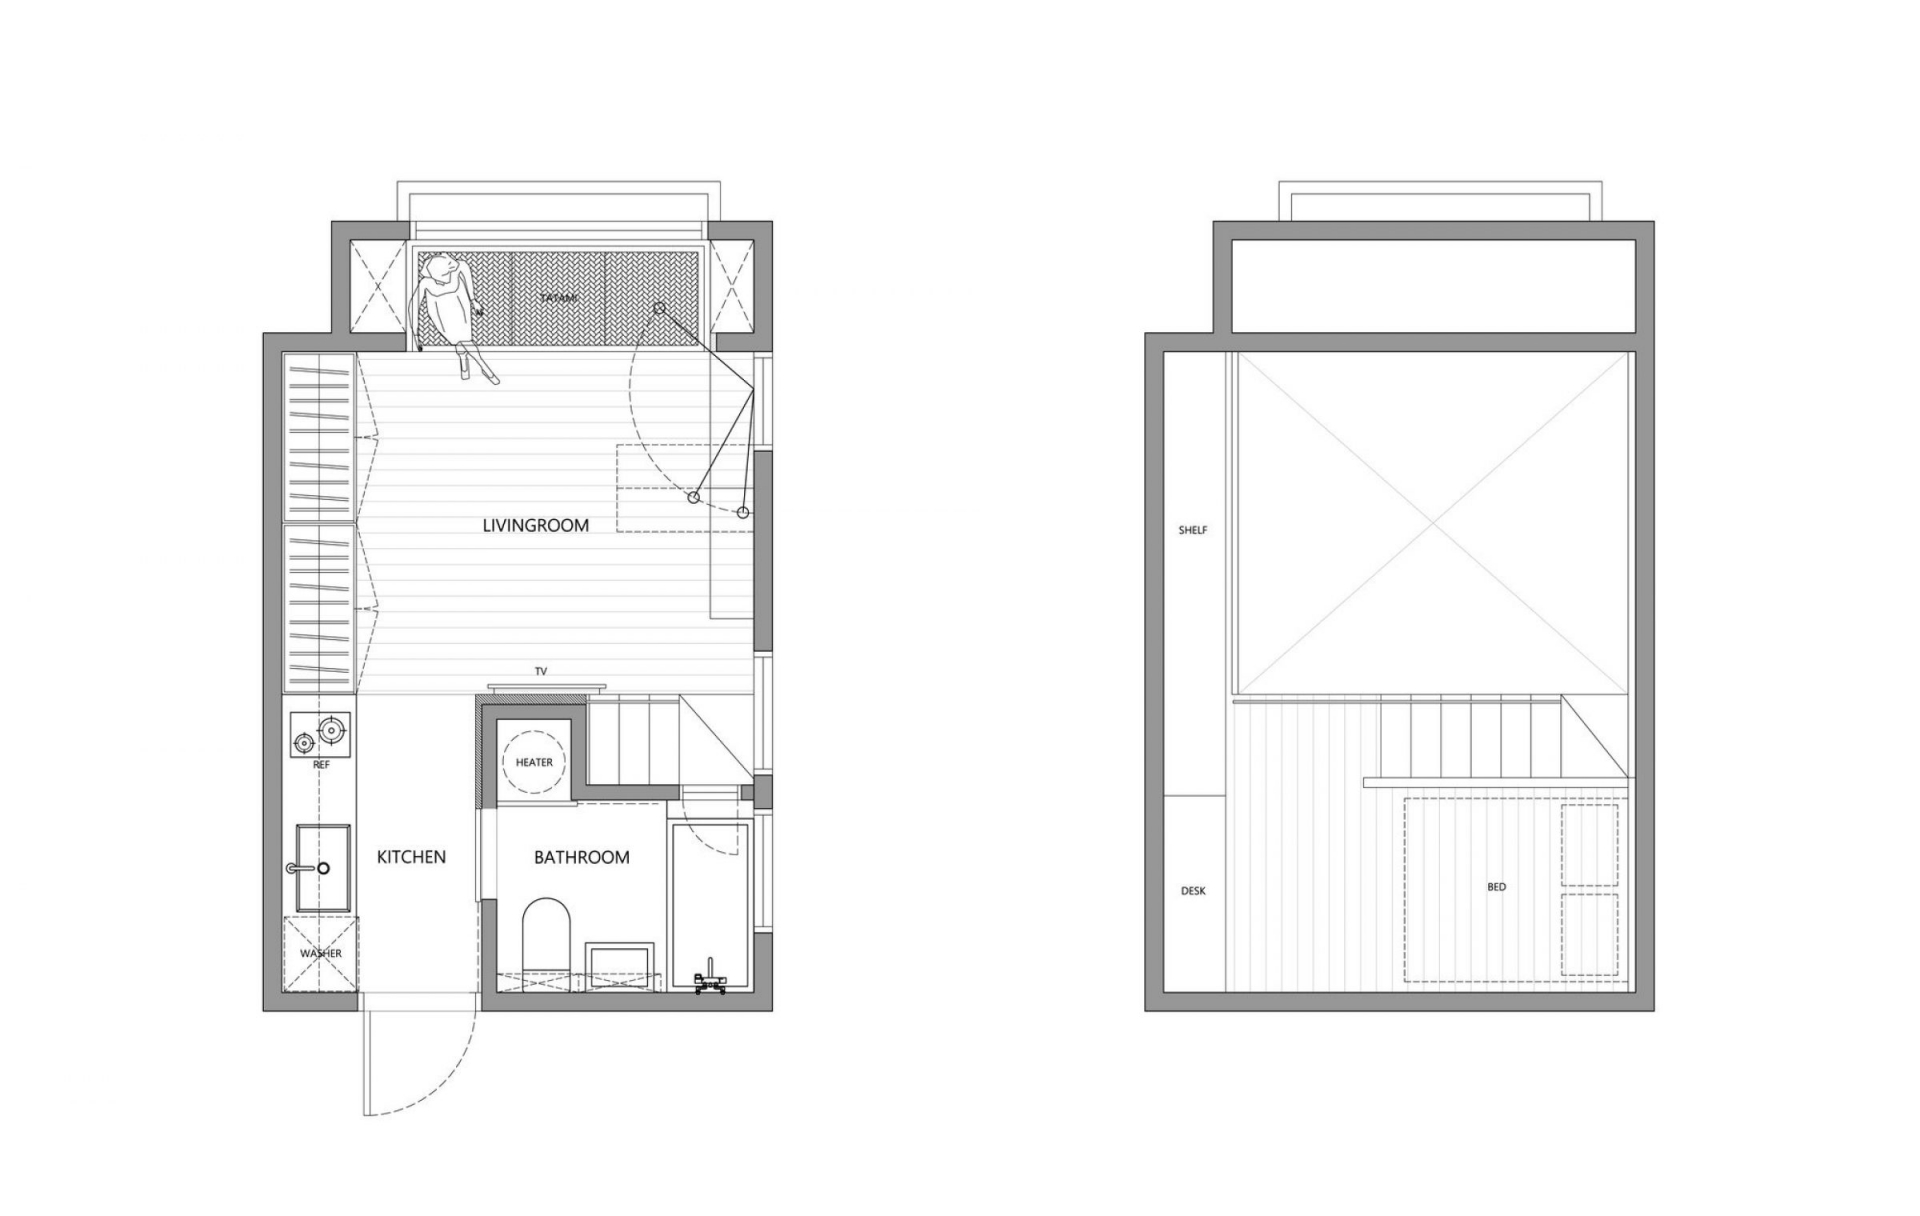 Sơ đồ thiết kế căn hộ 22m² tại Đài Bắc do A Little Design cung cấp.